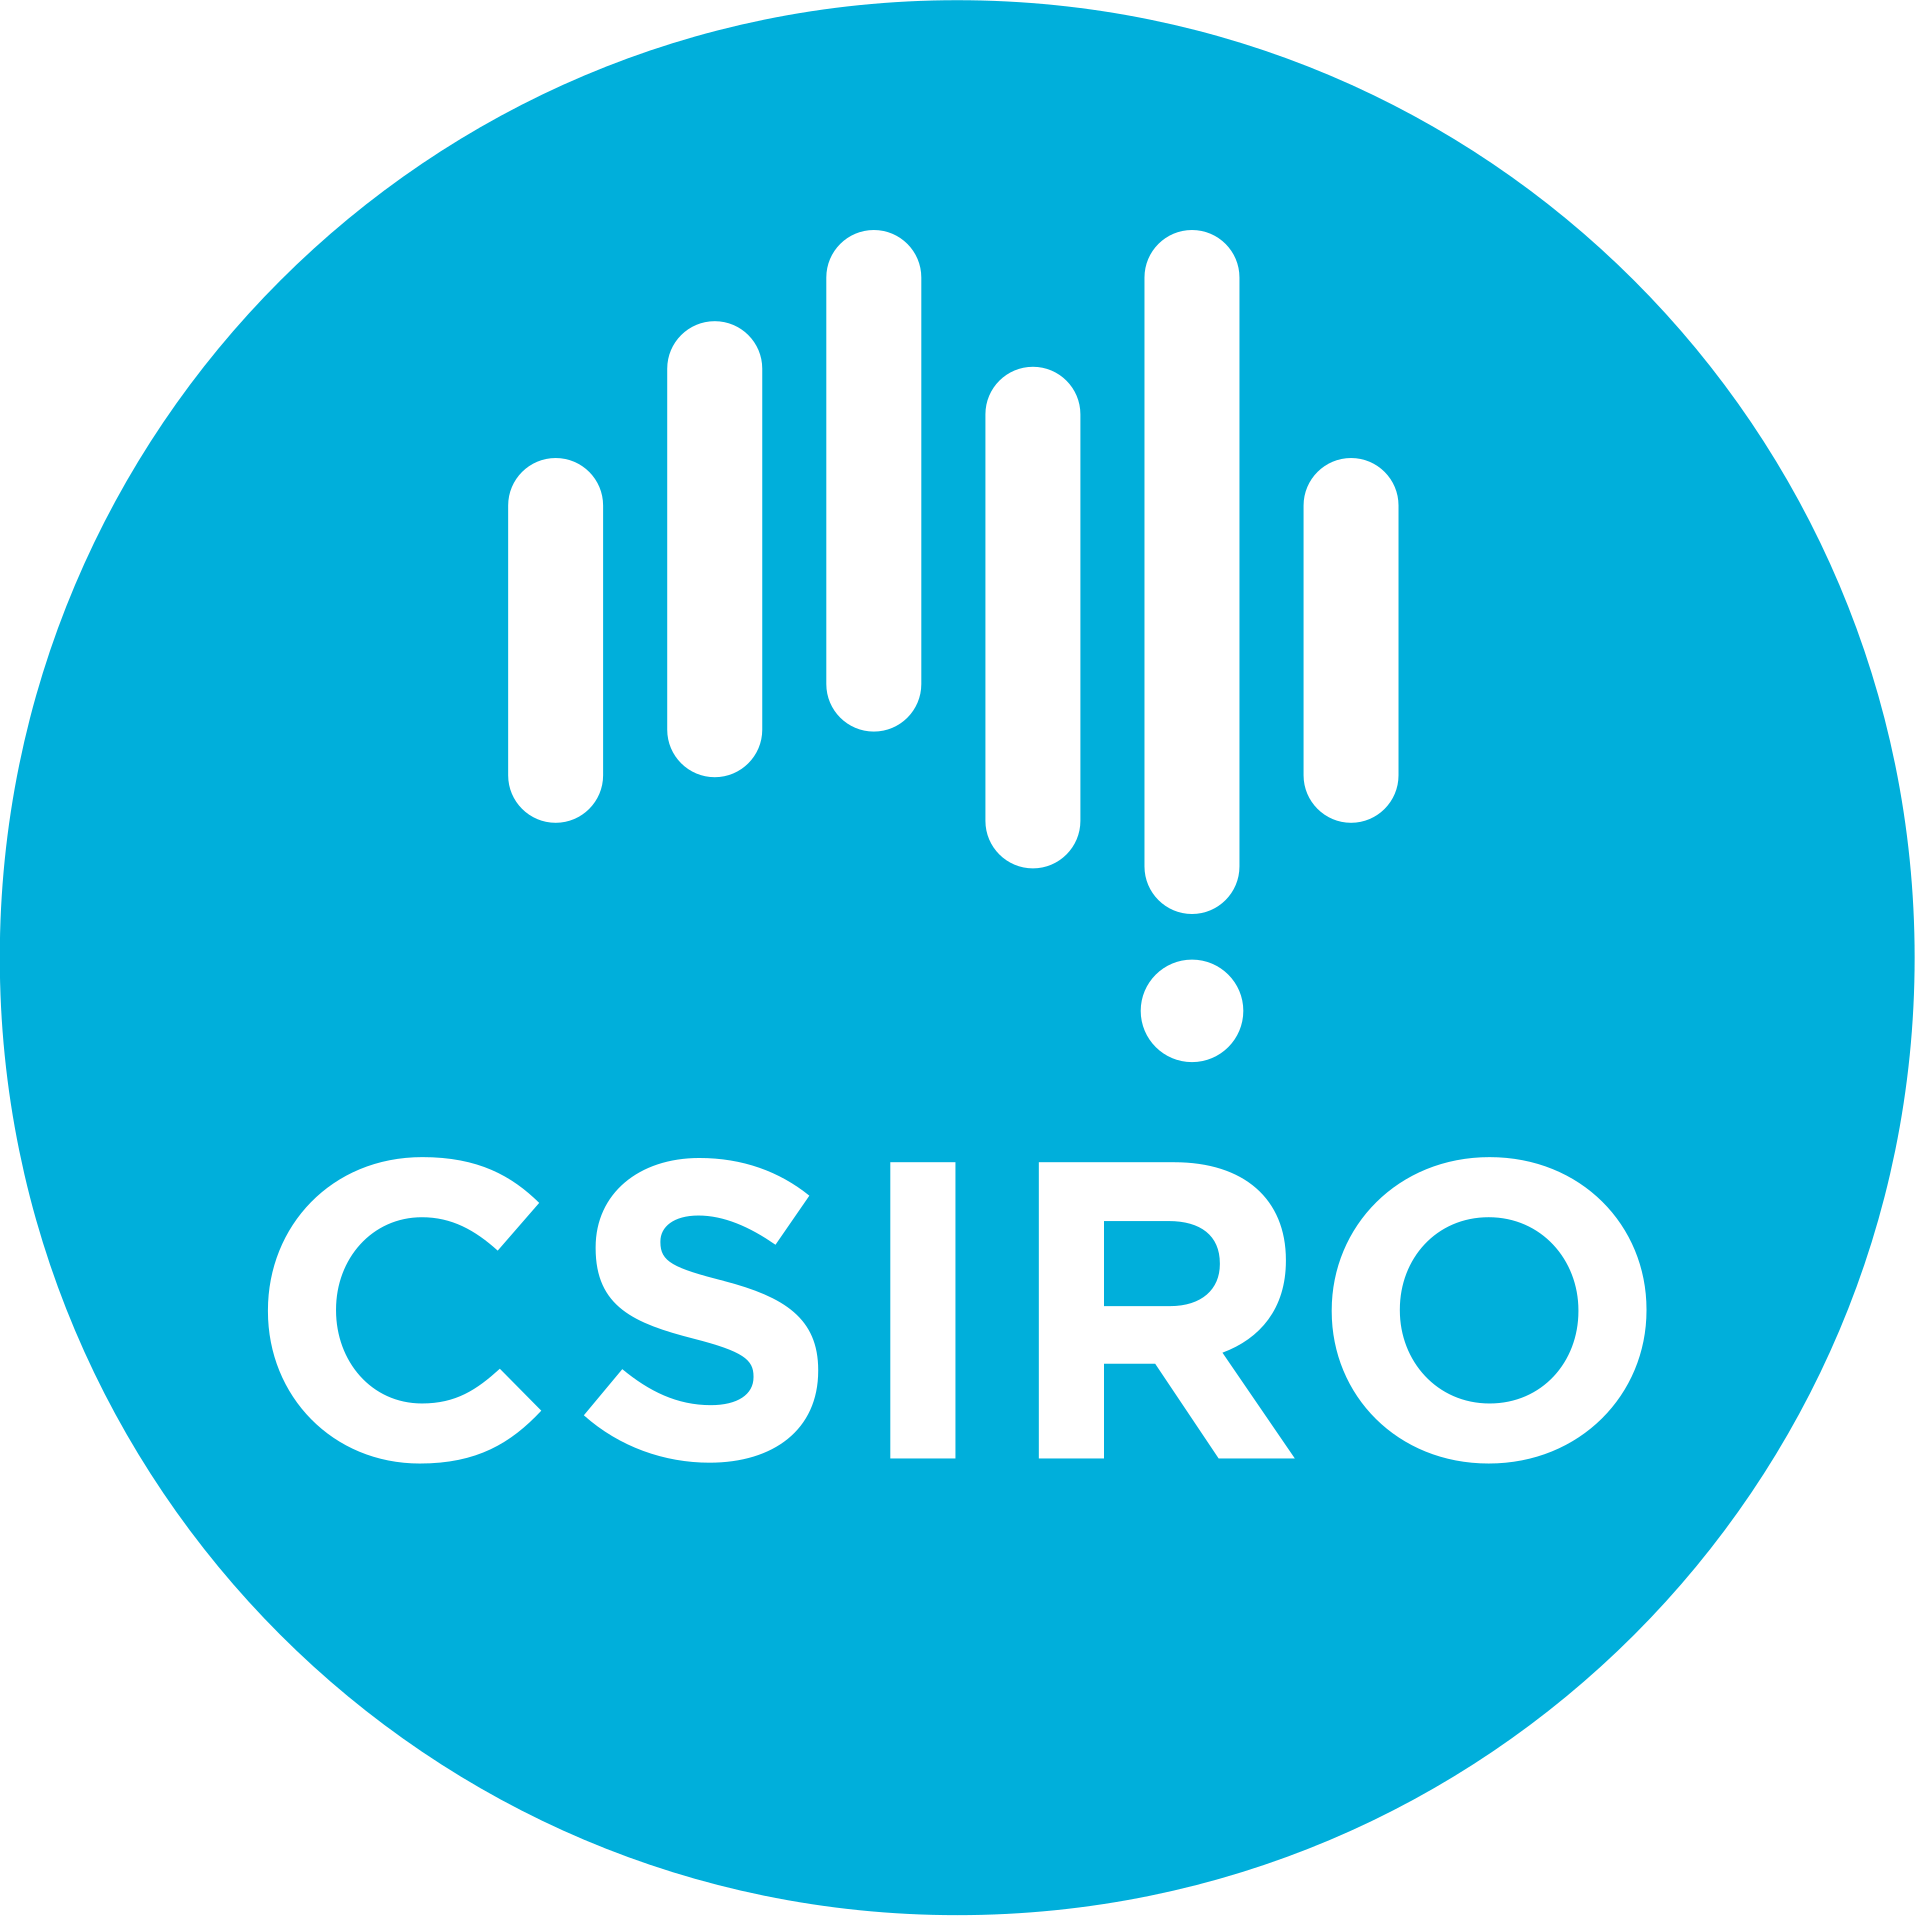 CSIRO - Commonwealth Scientific and Industrial Research Organization - Государственное объединение научных и прикладных исследований Австралии